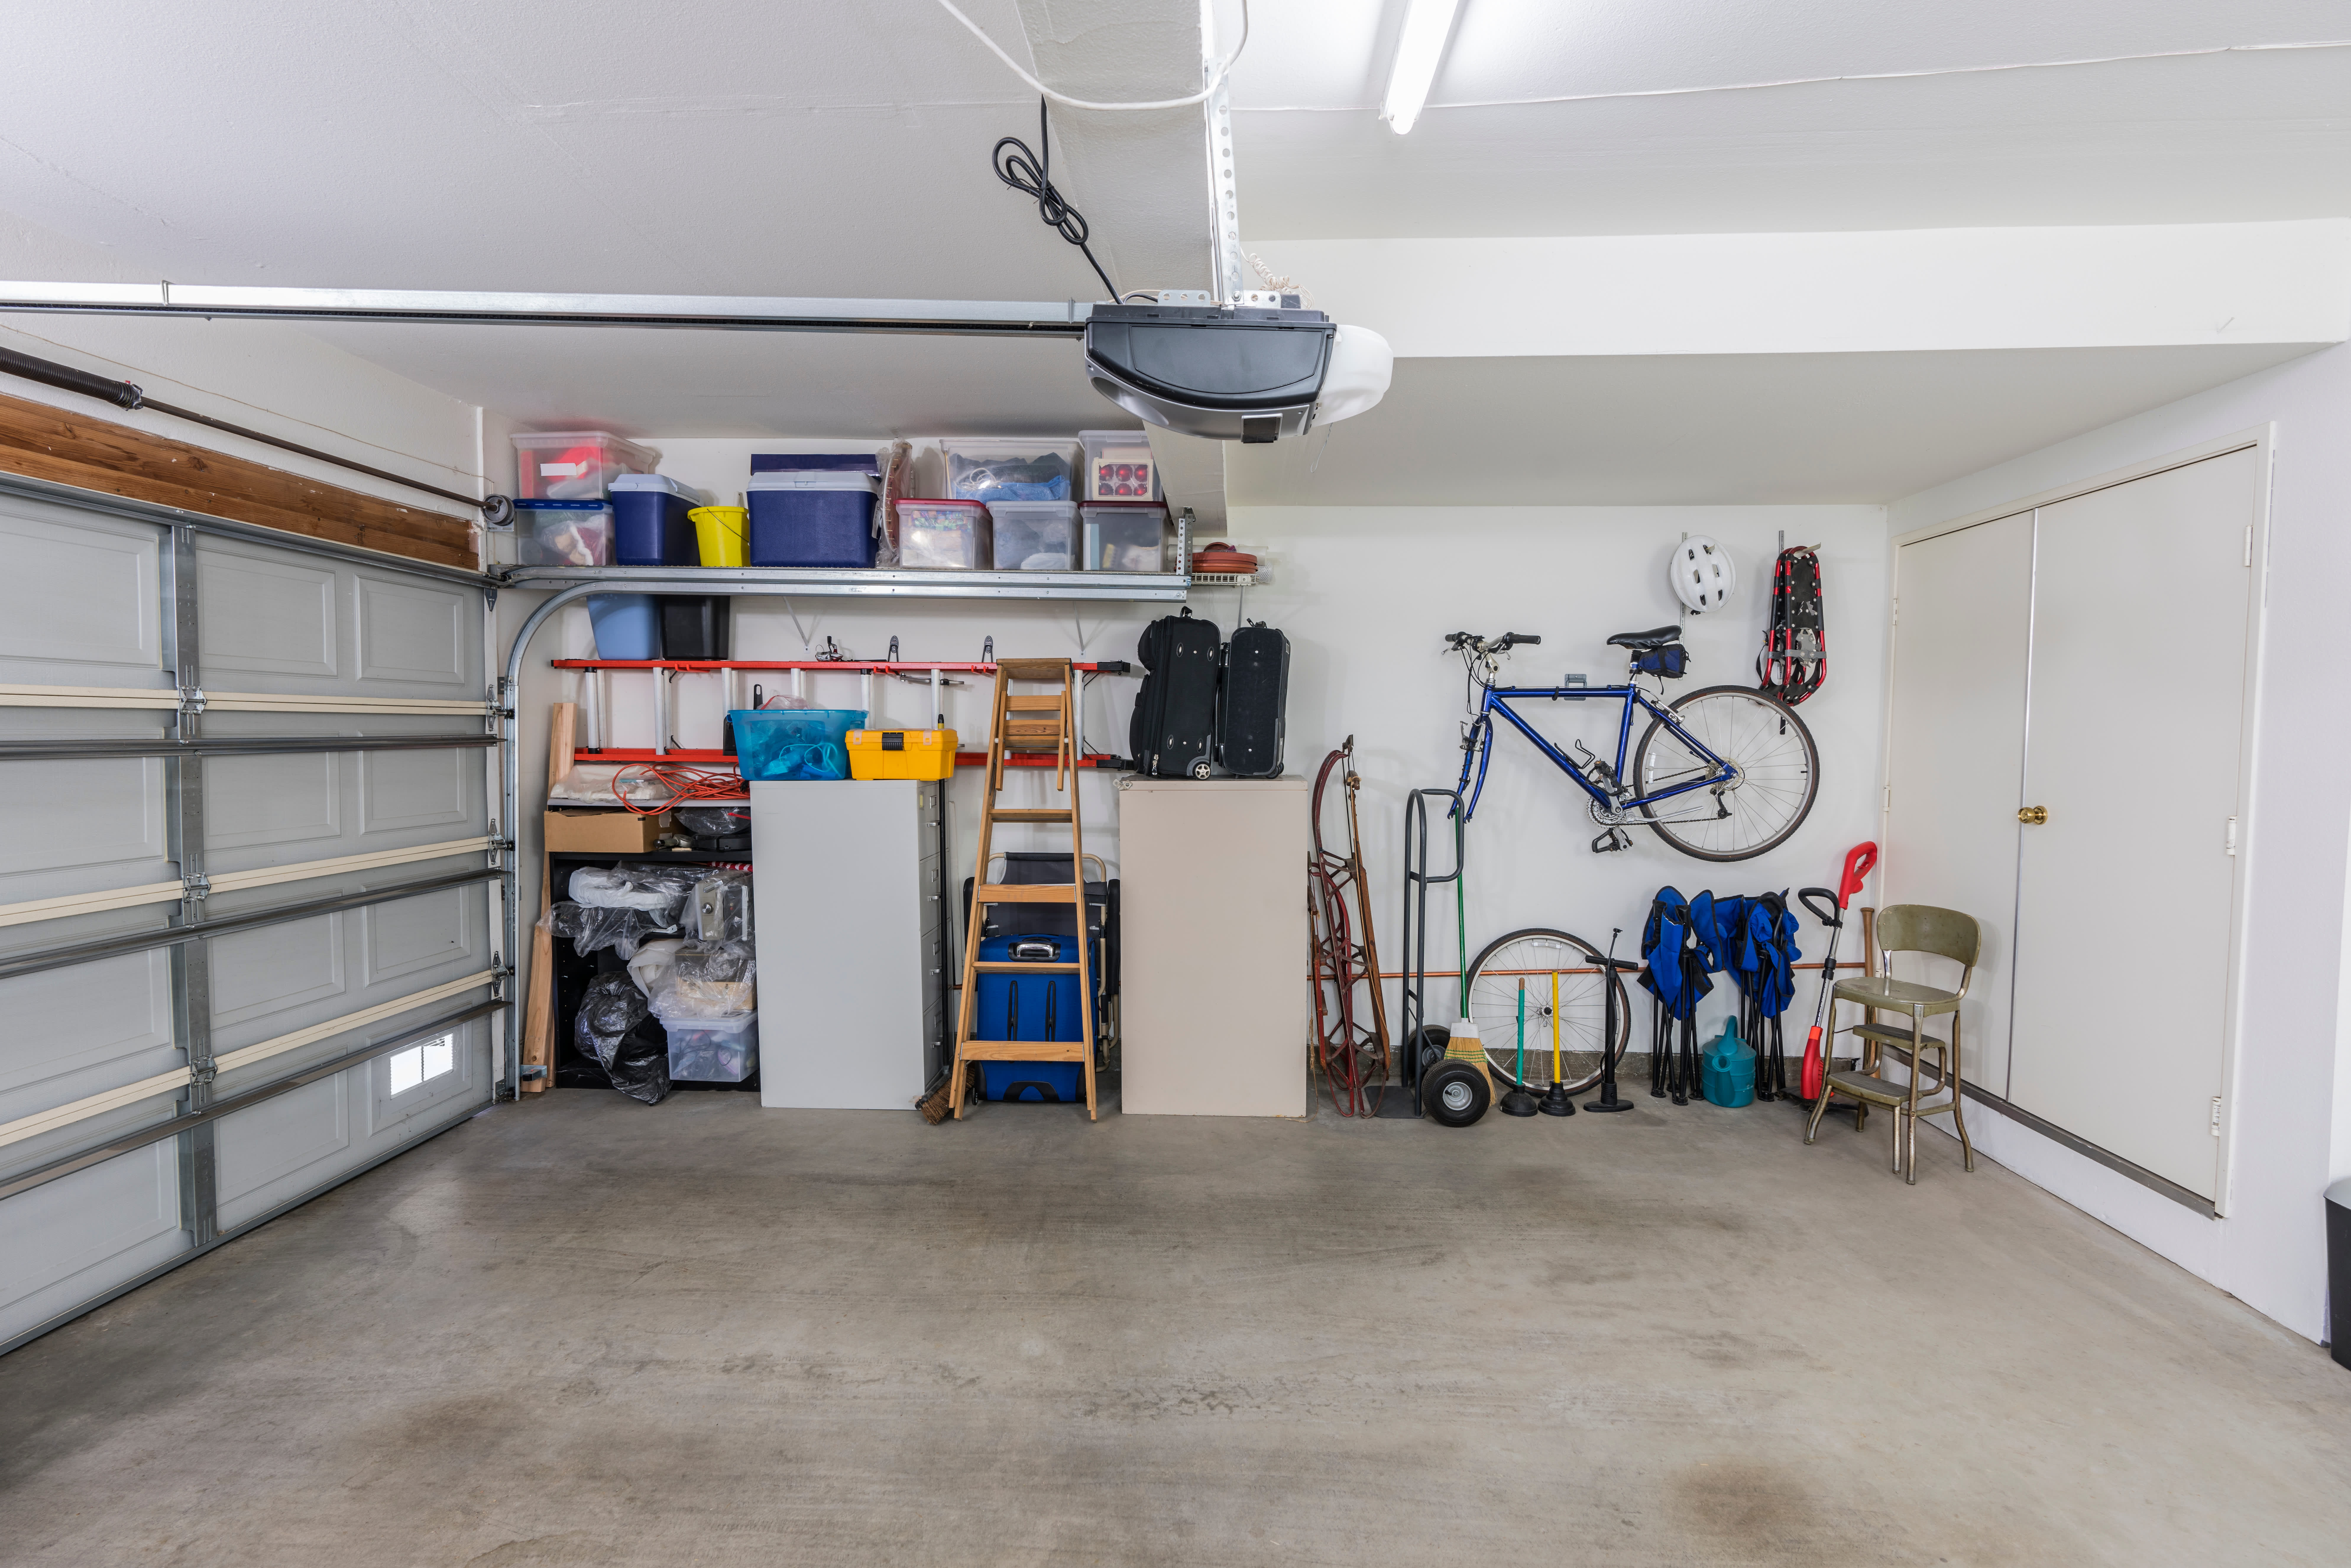 Genius Garage Storage Ideas To Get You Organized